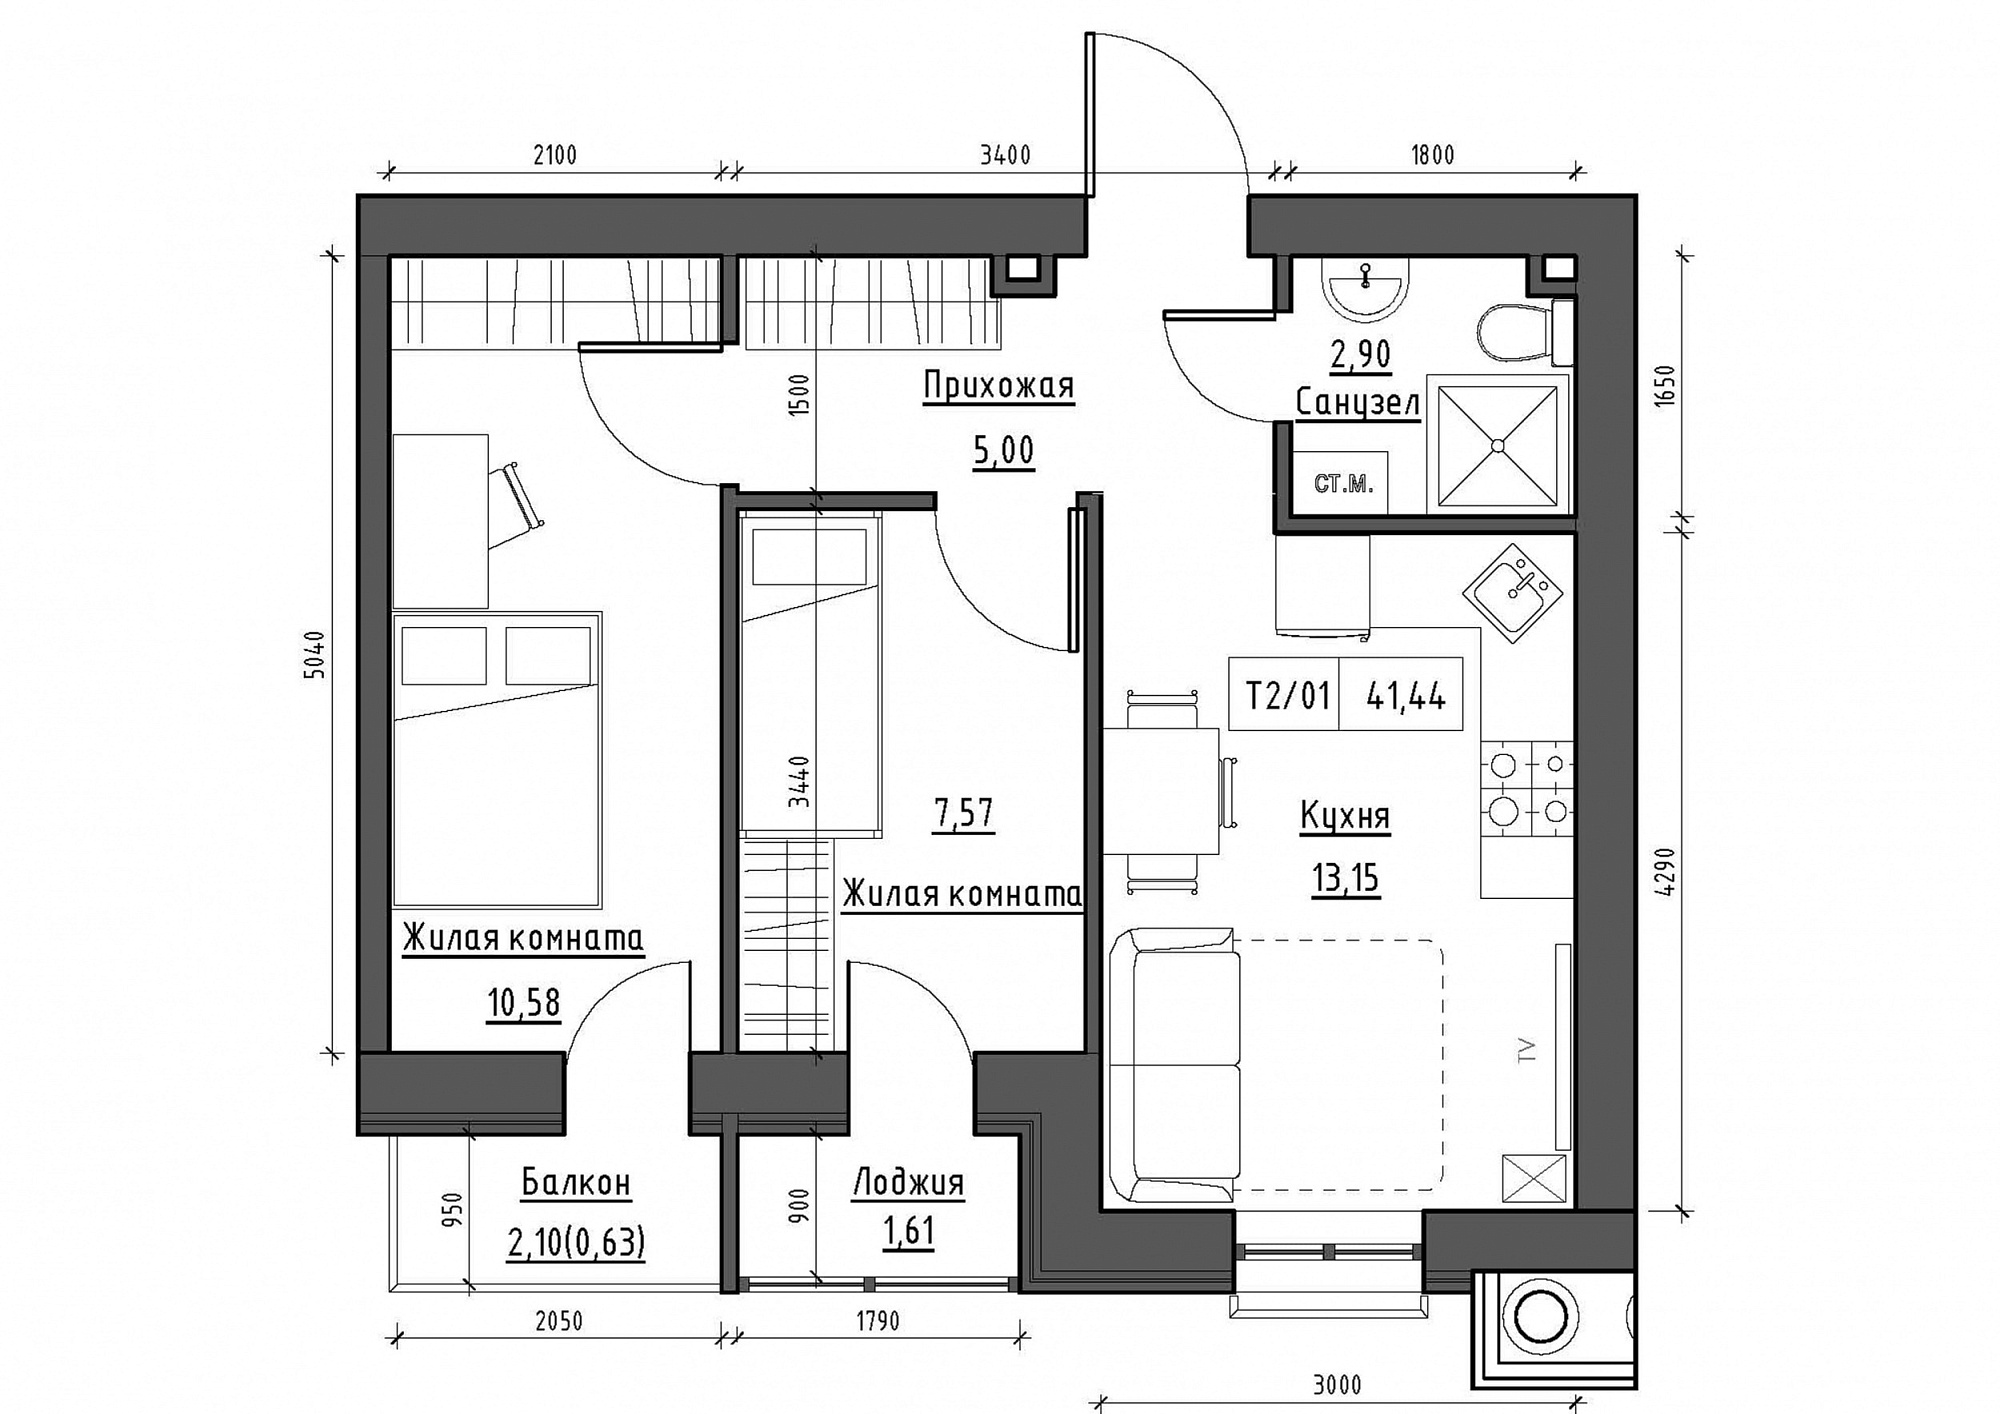 Планування 2-к квартира площею 41.44м2, KS-011-02/0011.